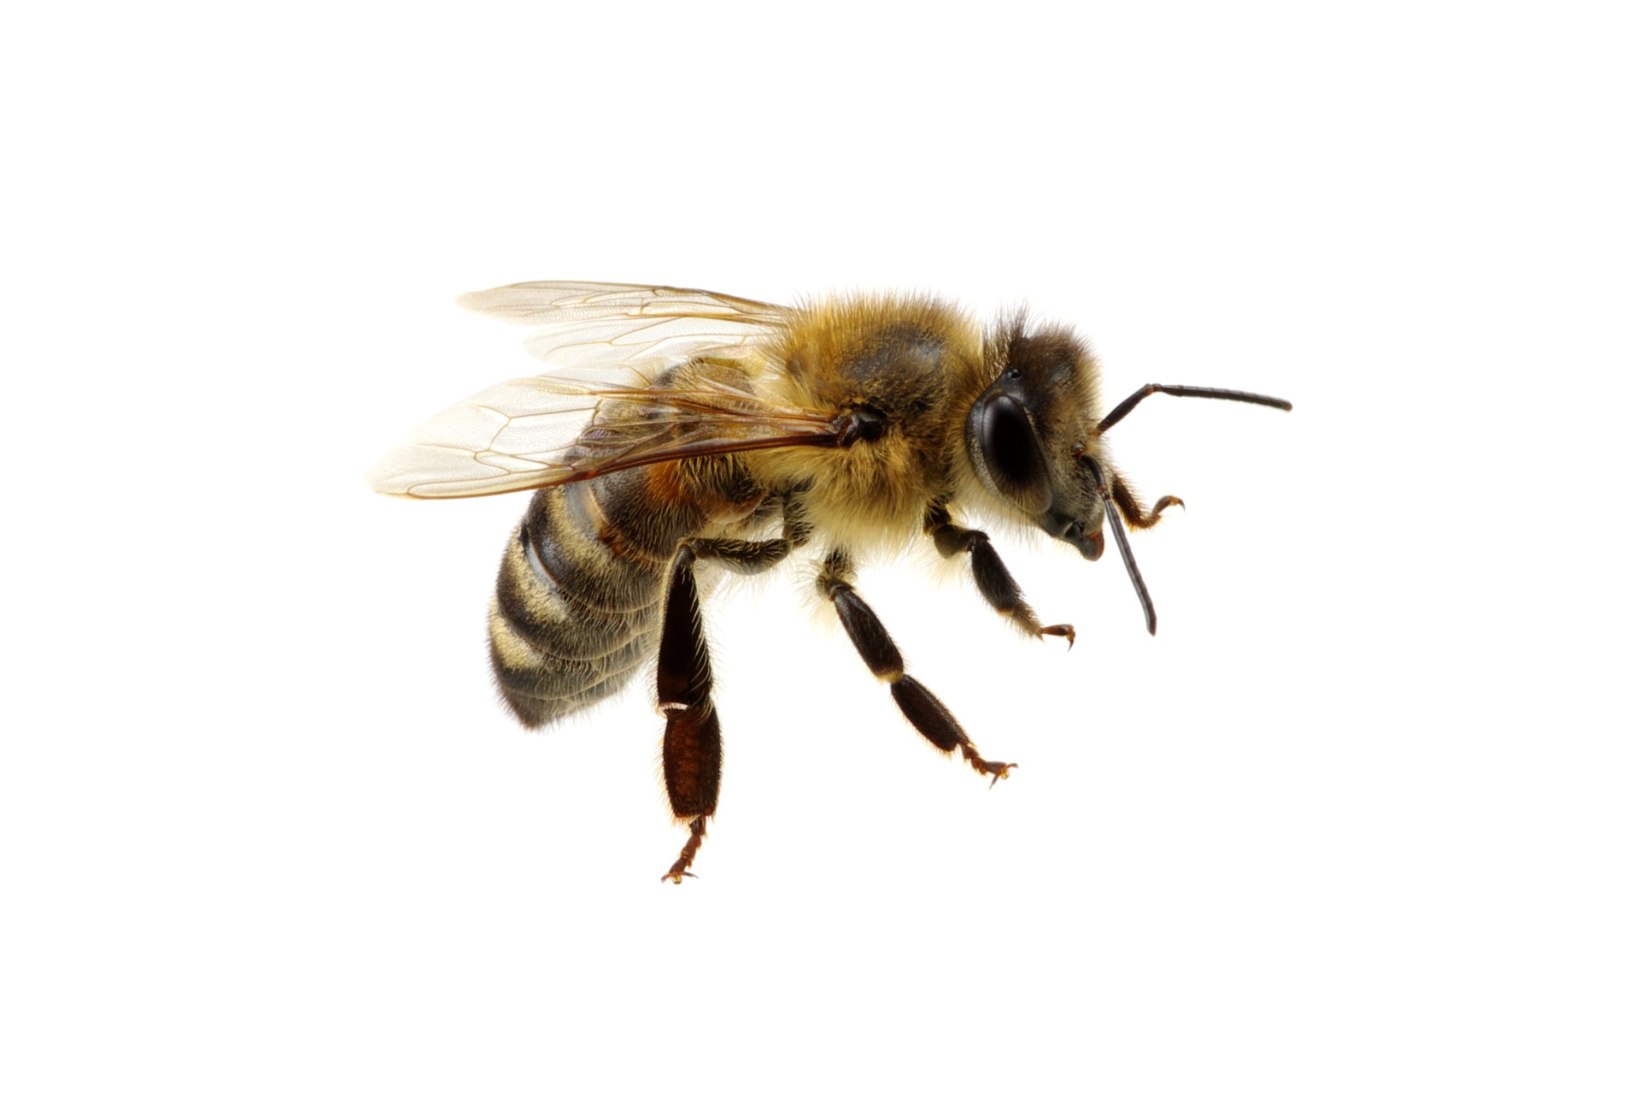 Kas teadsid? Putukaallergia risk suureneb iga järgmise nõelamisega